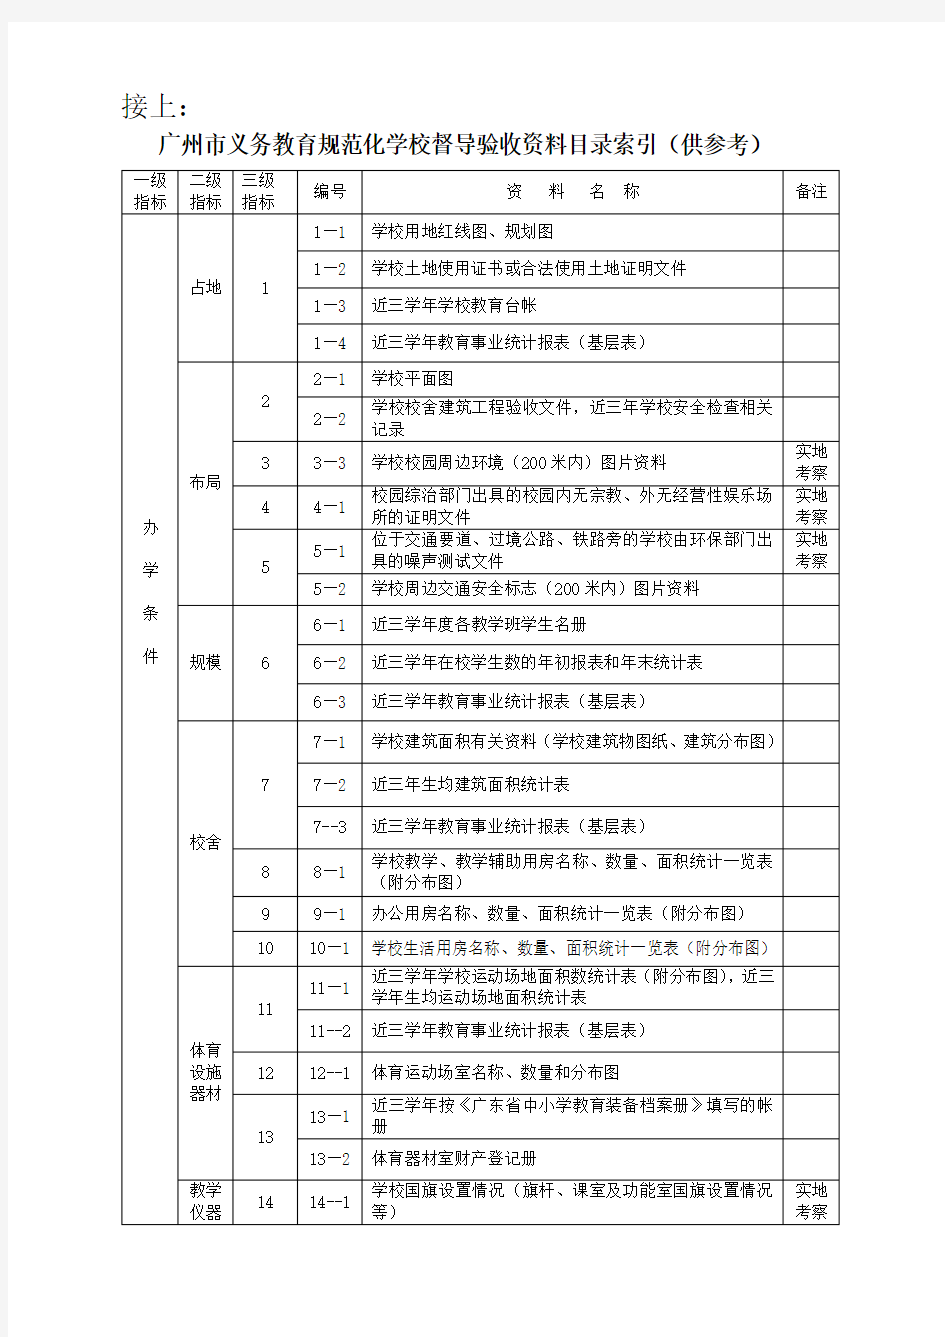 广州市义务教育规范化学校督导验收资料目录索引